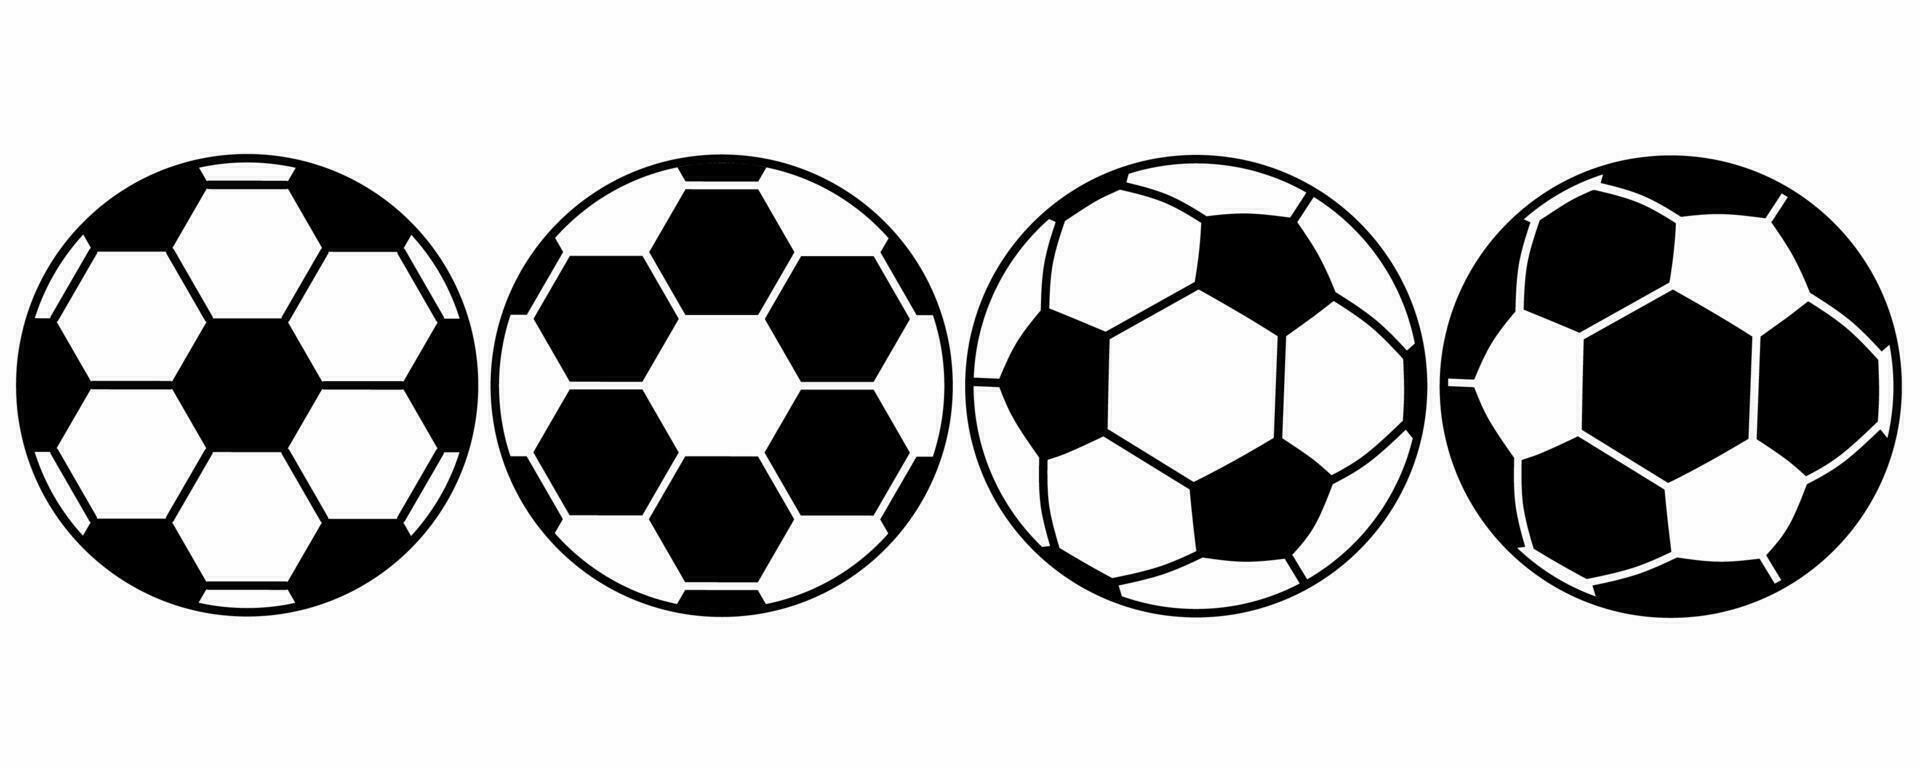 contour silhouette ballon de football icon set avec un style différent isolé sur fond blanc vecteur